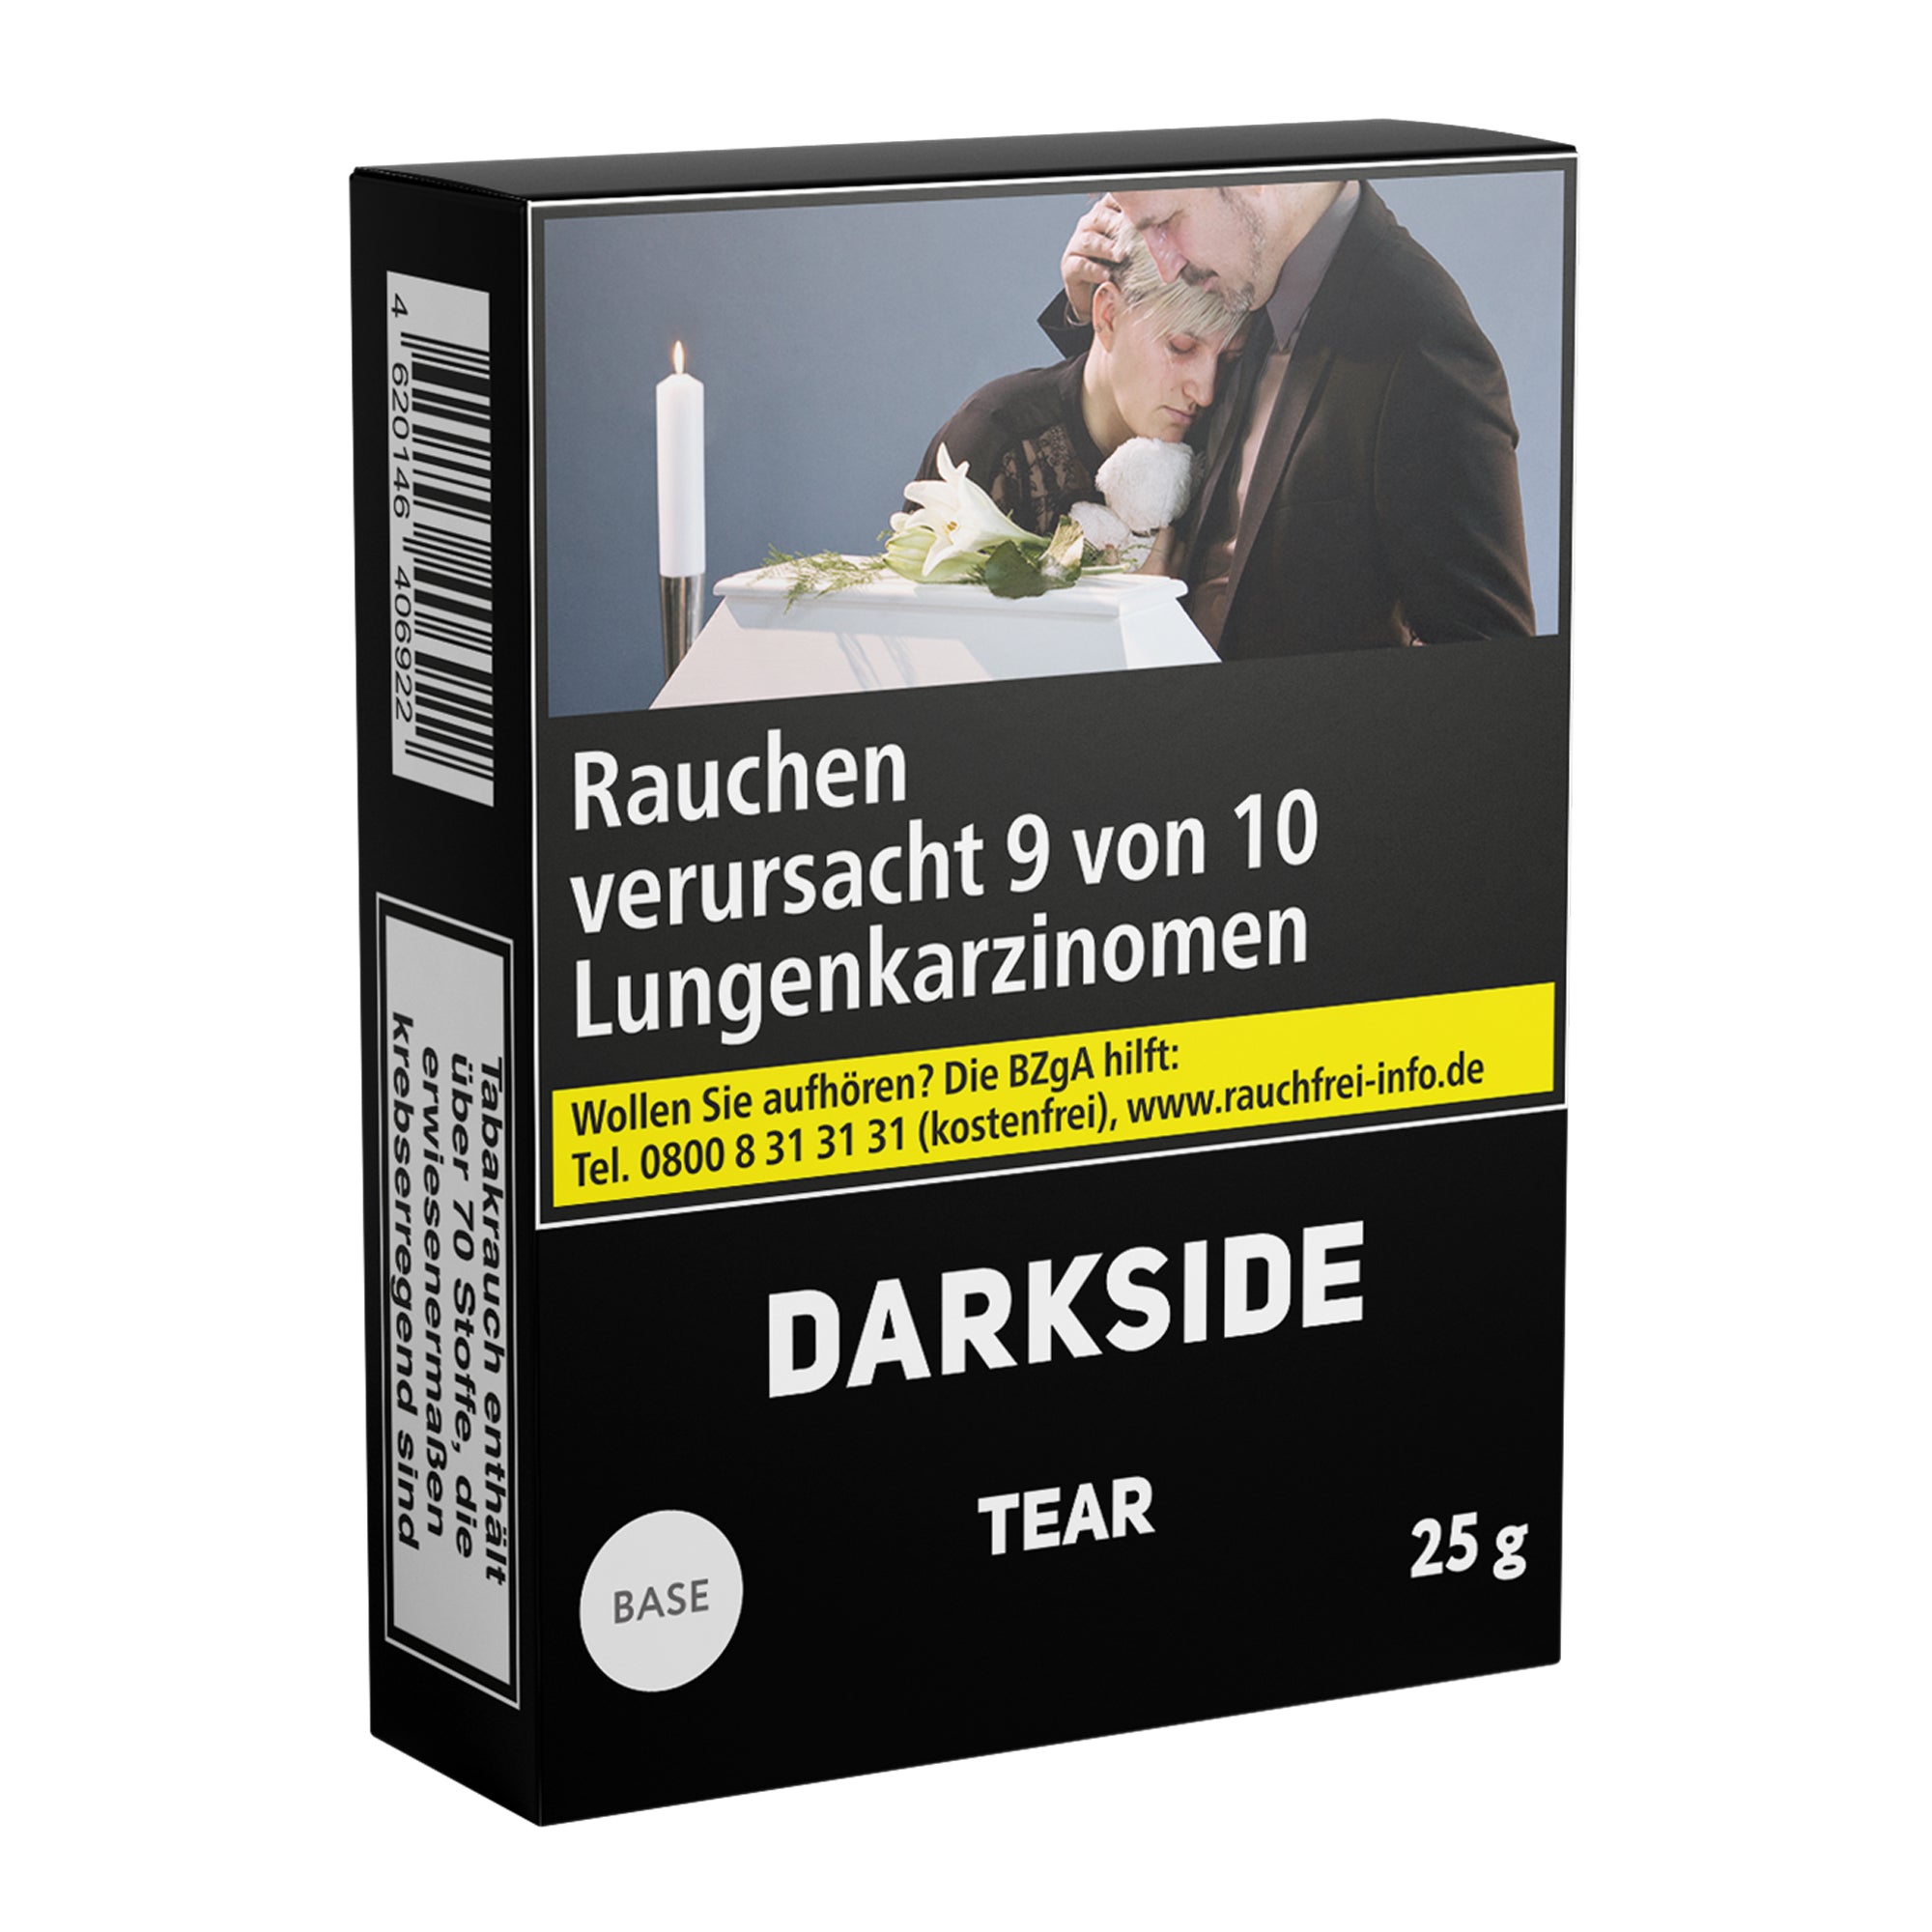 Darkside Base - Tear (25g)